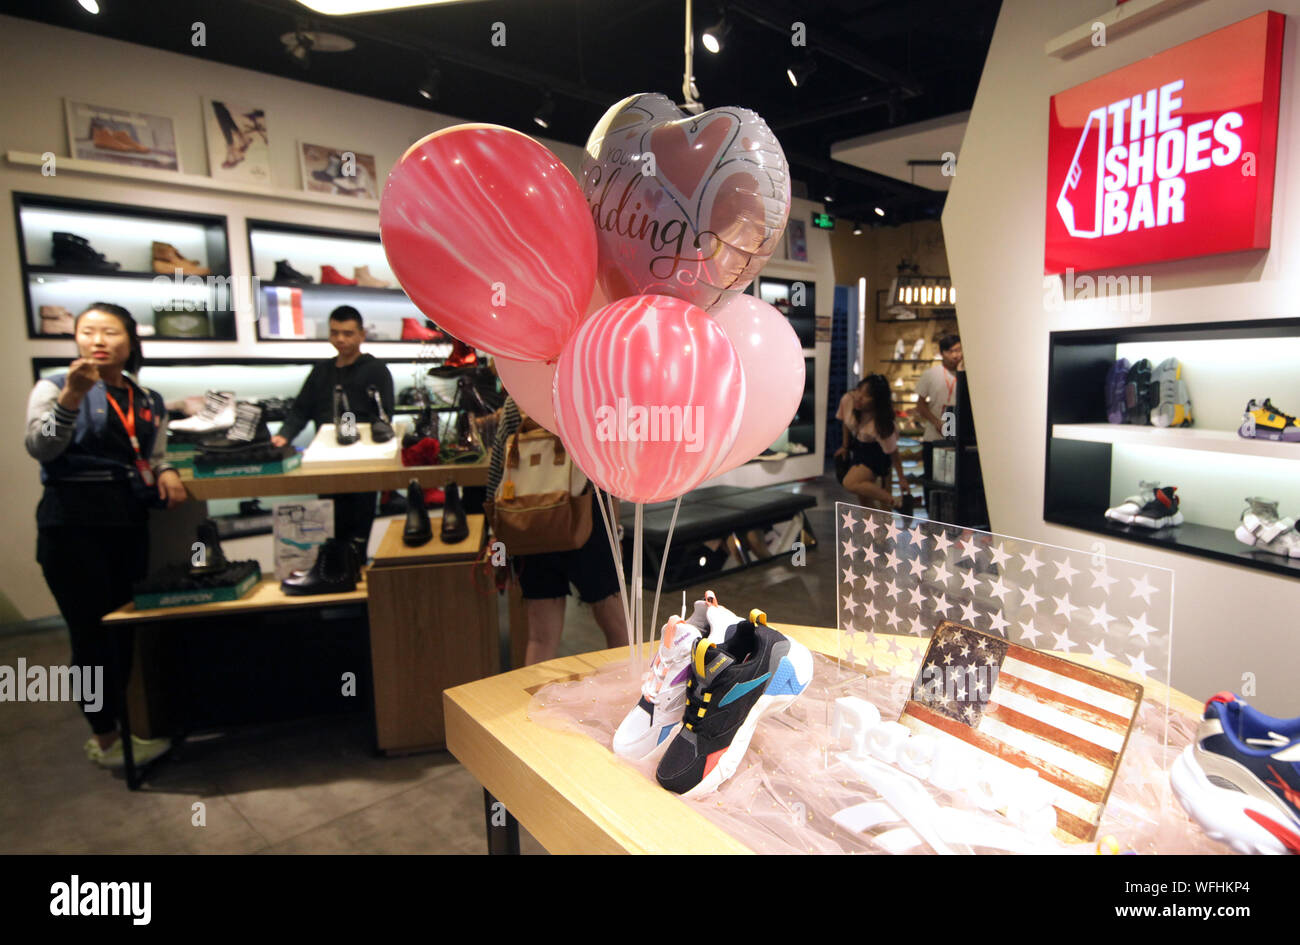 Chinesische shop in ein Schuhgeschäft zu verkaufen US-Schuhe in einem  internationalen Shopping Mall in Peking am Samstag, den 31. August 2019.  Aktuellsten Tarife Ziele chinesischen US-Präsident Donald Trump-Produkten  in die USA exportiert,